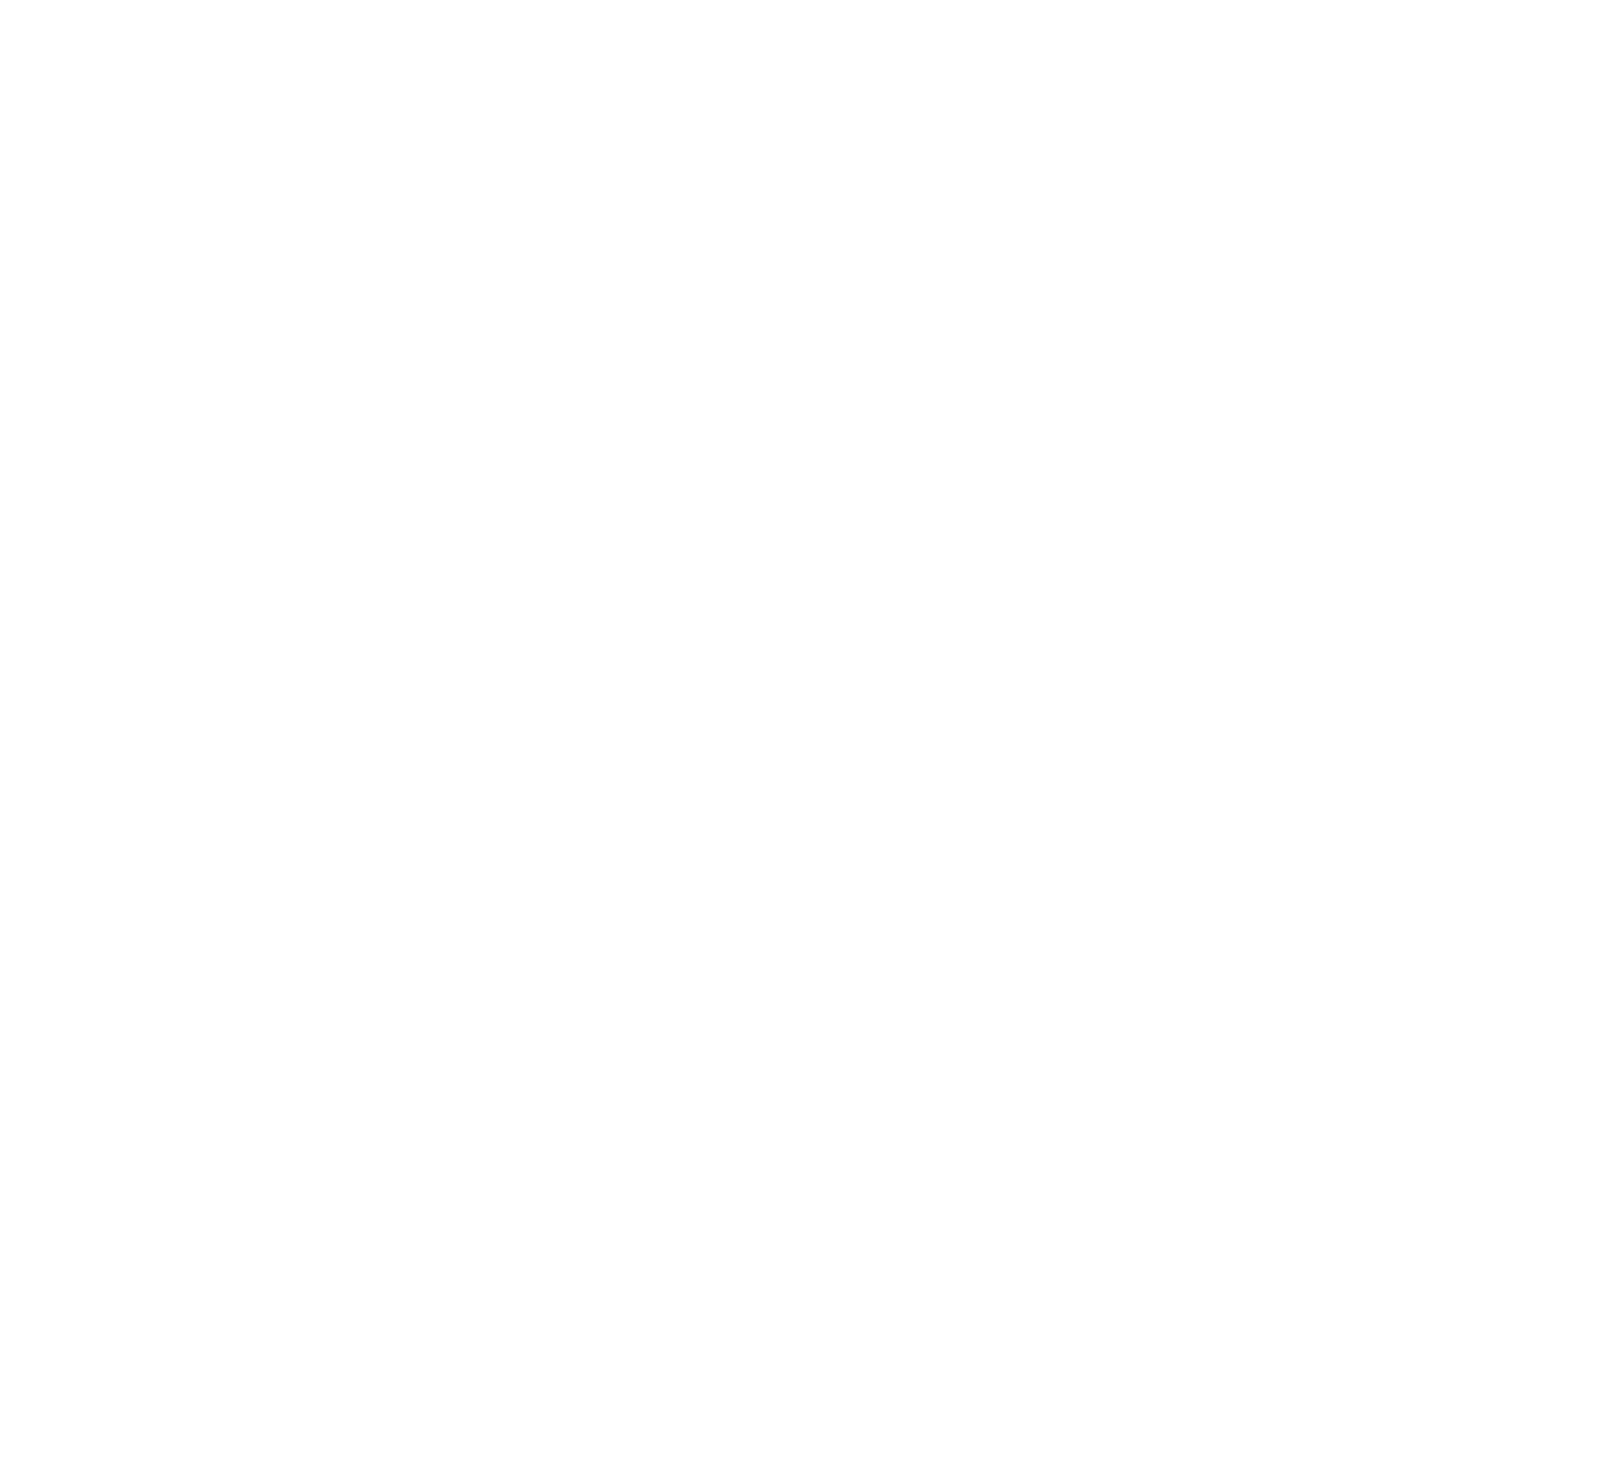 Ubisoft logo grand pour les fonds sombres (PNG transparent)